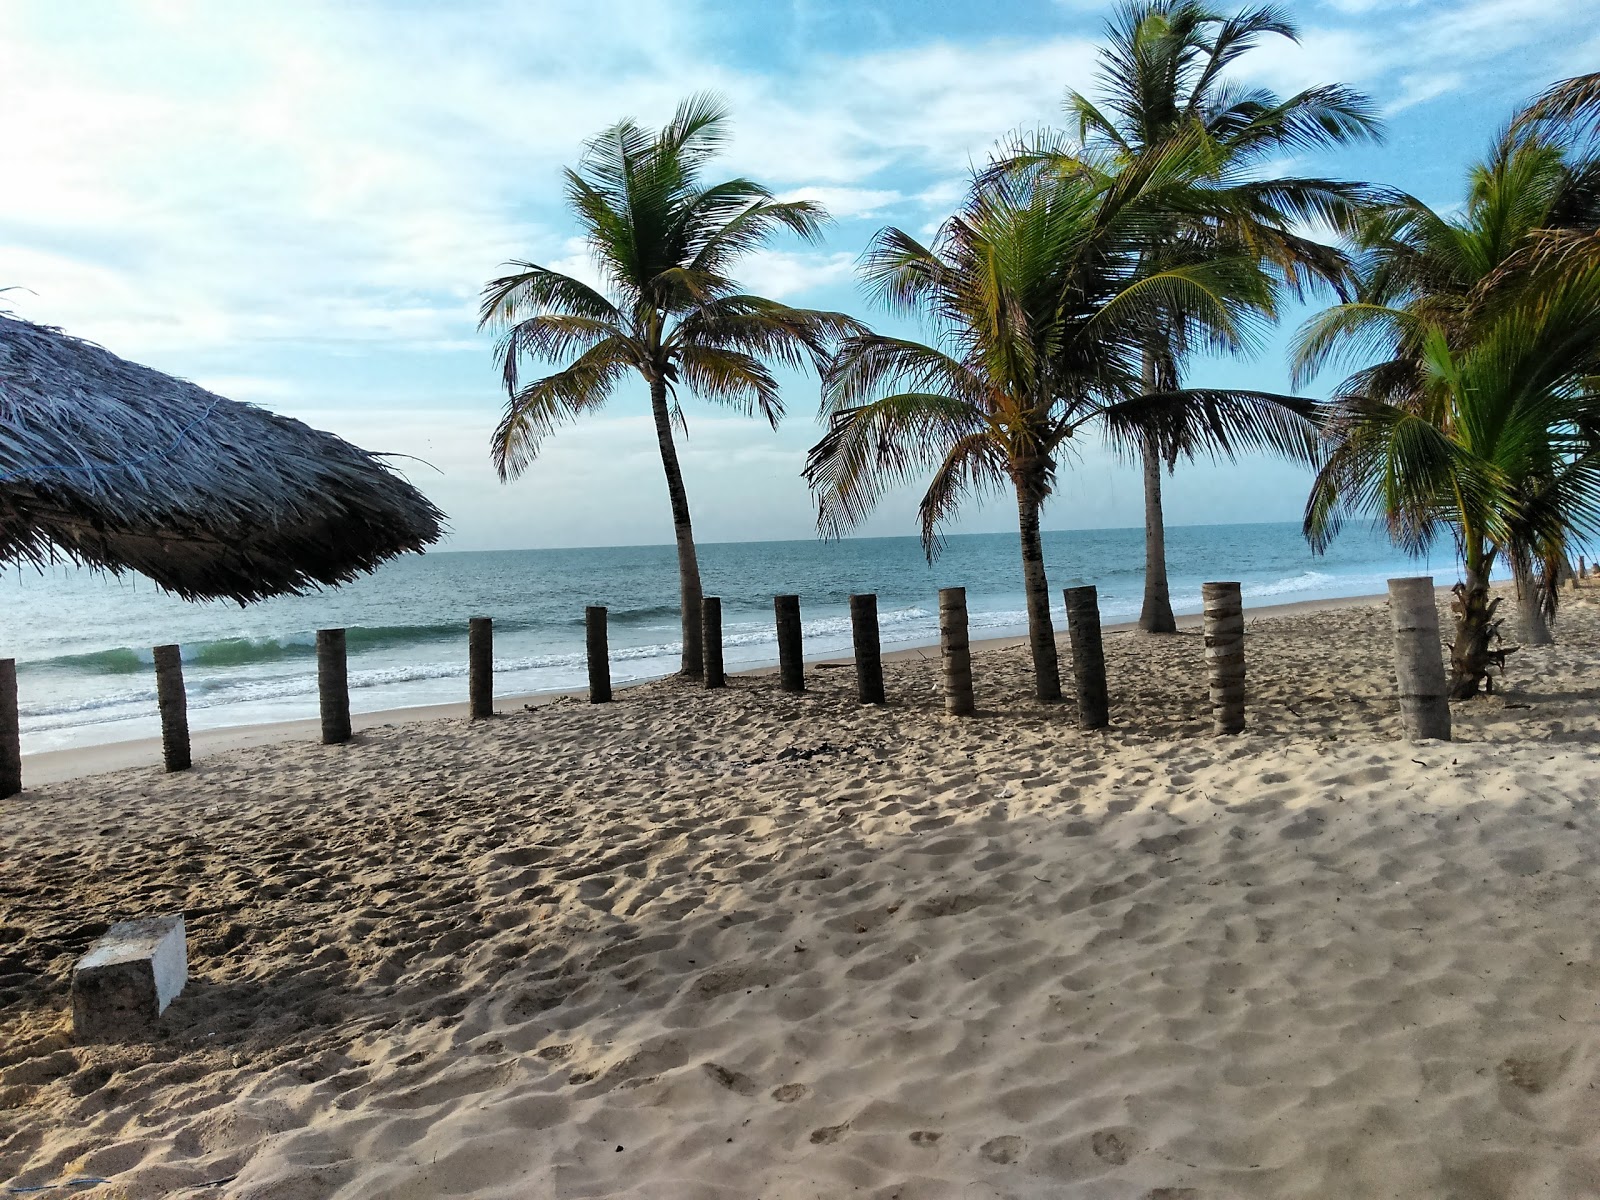 Foto von Praia do Miai de Cima - beliebter Ort unter Entspannungskennern